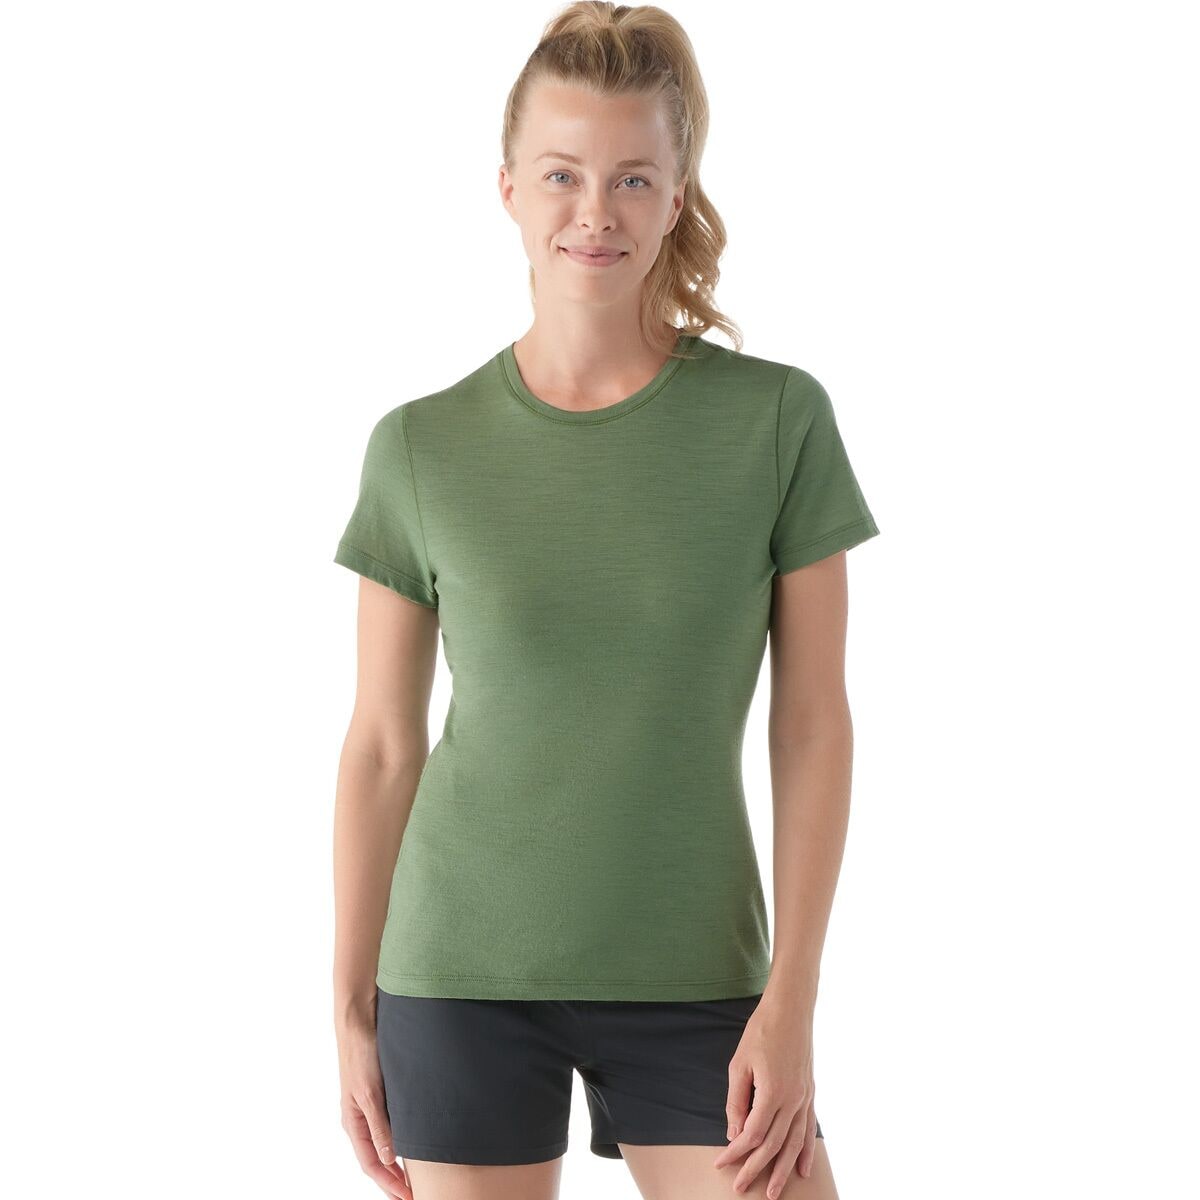 Smartwool Merino Short-Sleeve Tee - Women's Fern Green